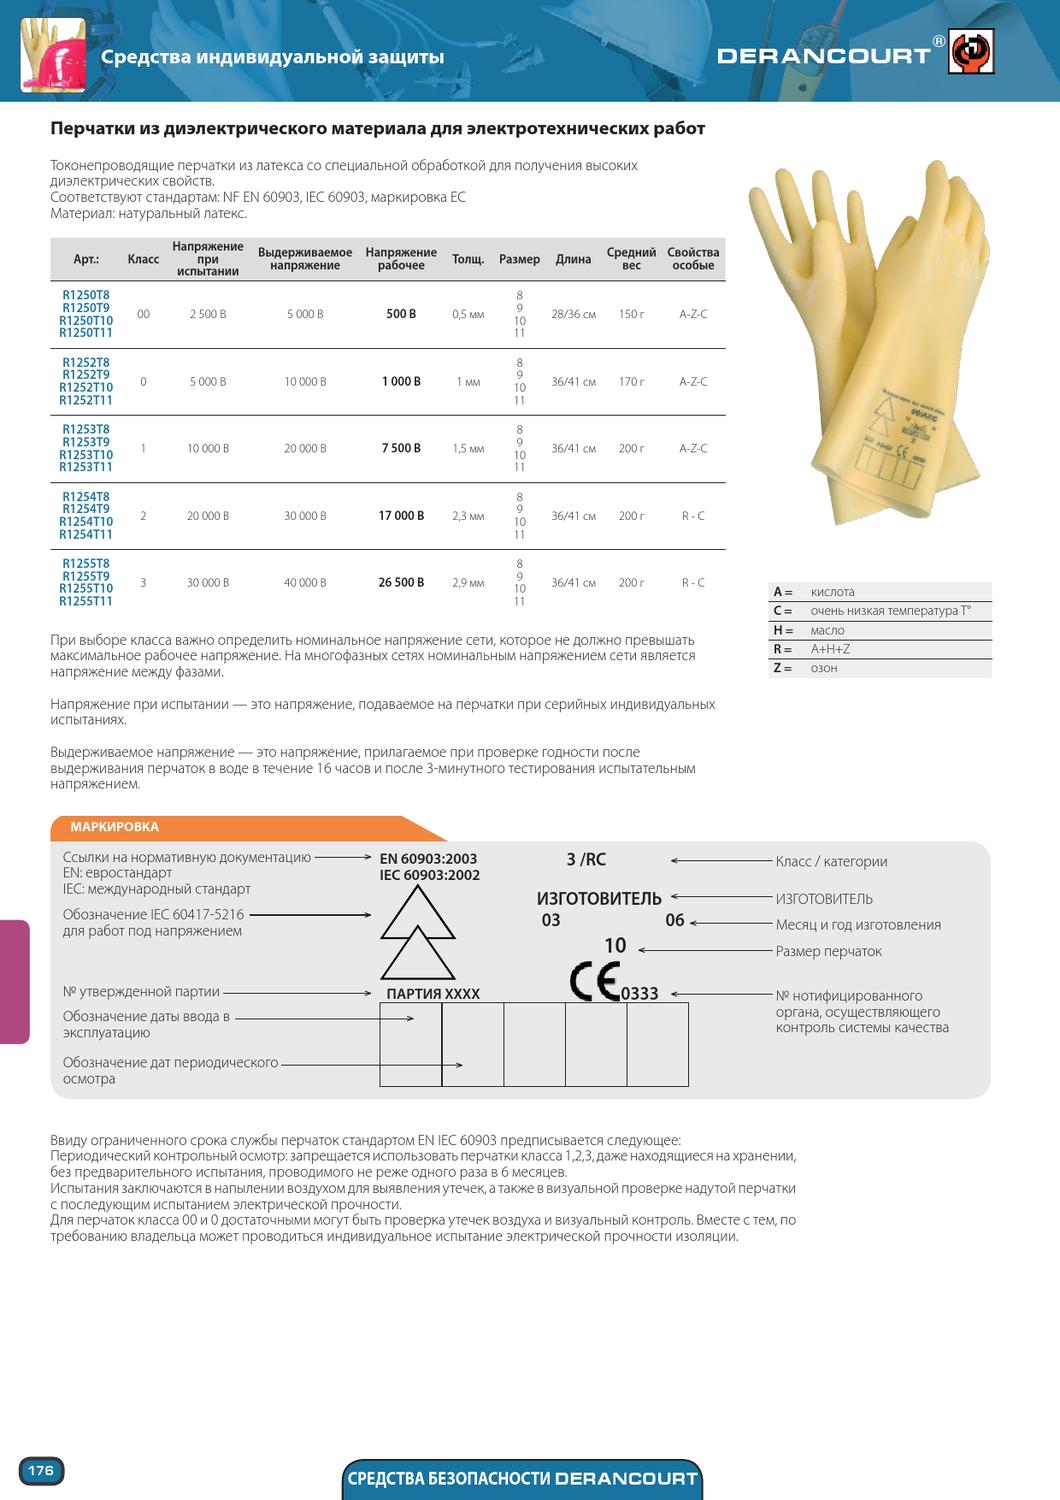 Гост р 57398-2017 перчатки резиновые общего назначения. технические требования